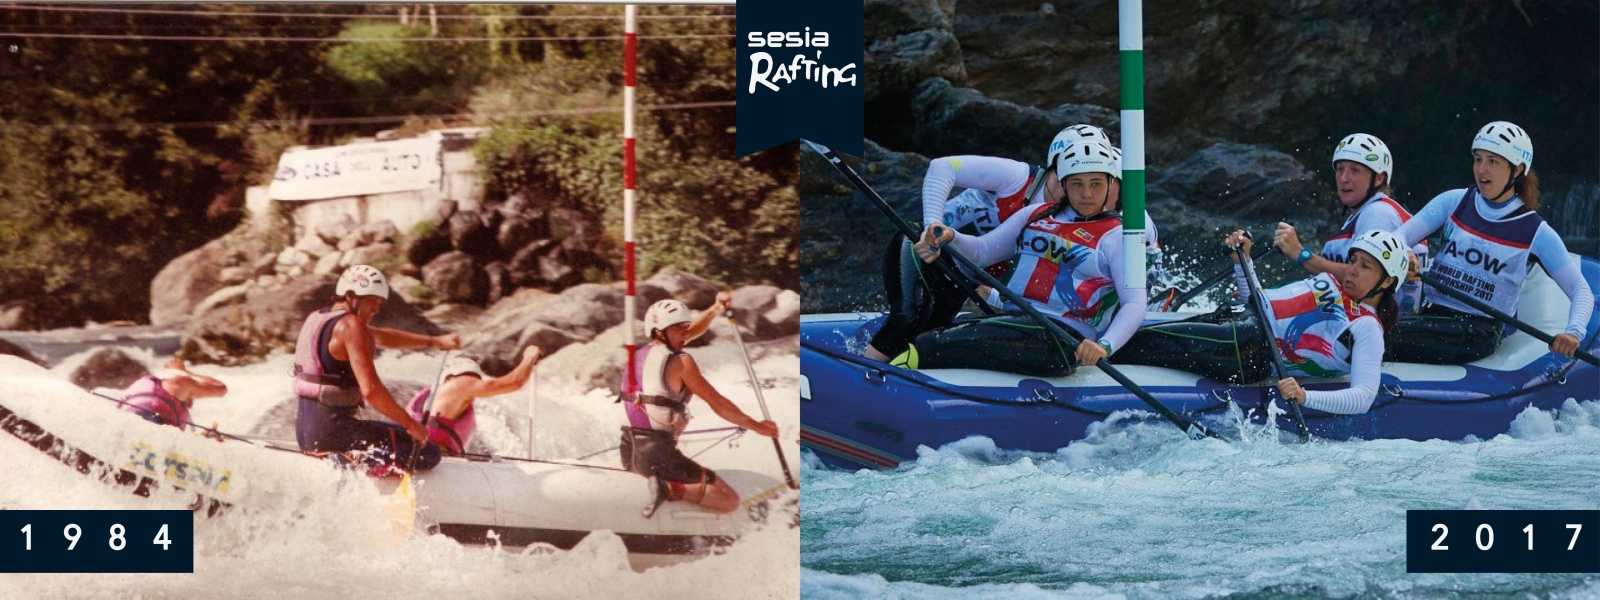 La storia di Sesia Rafting 1984-2017